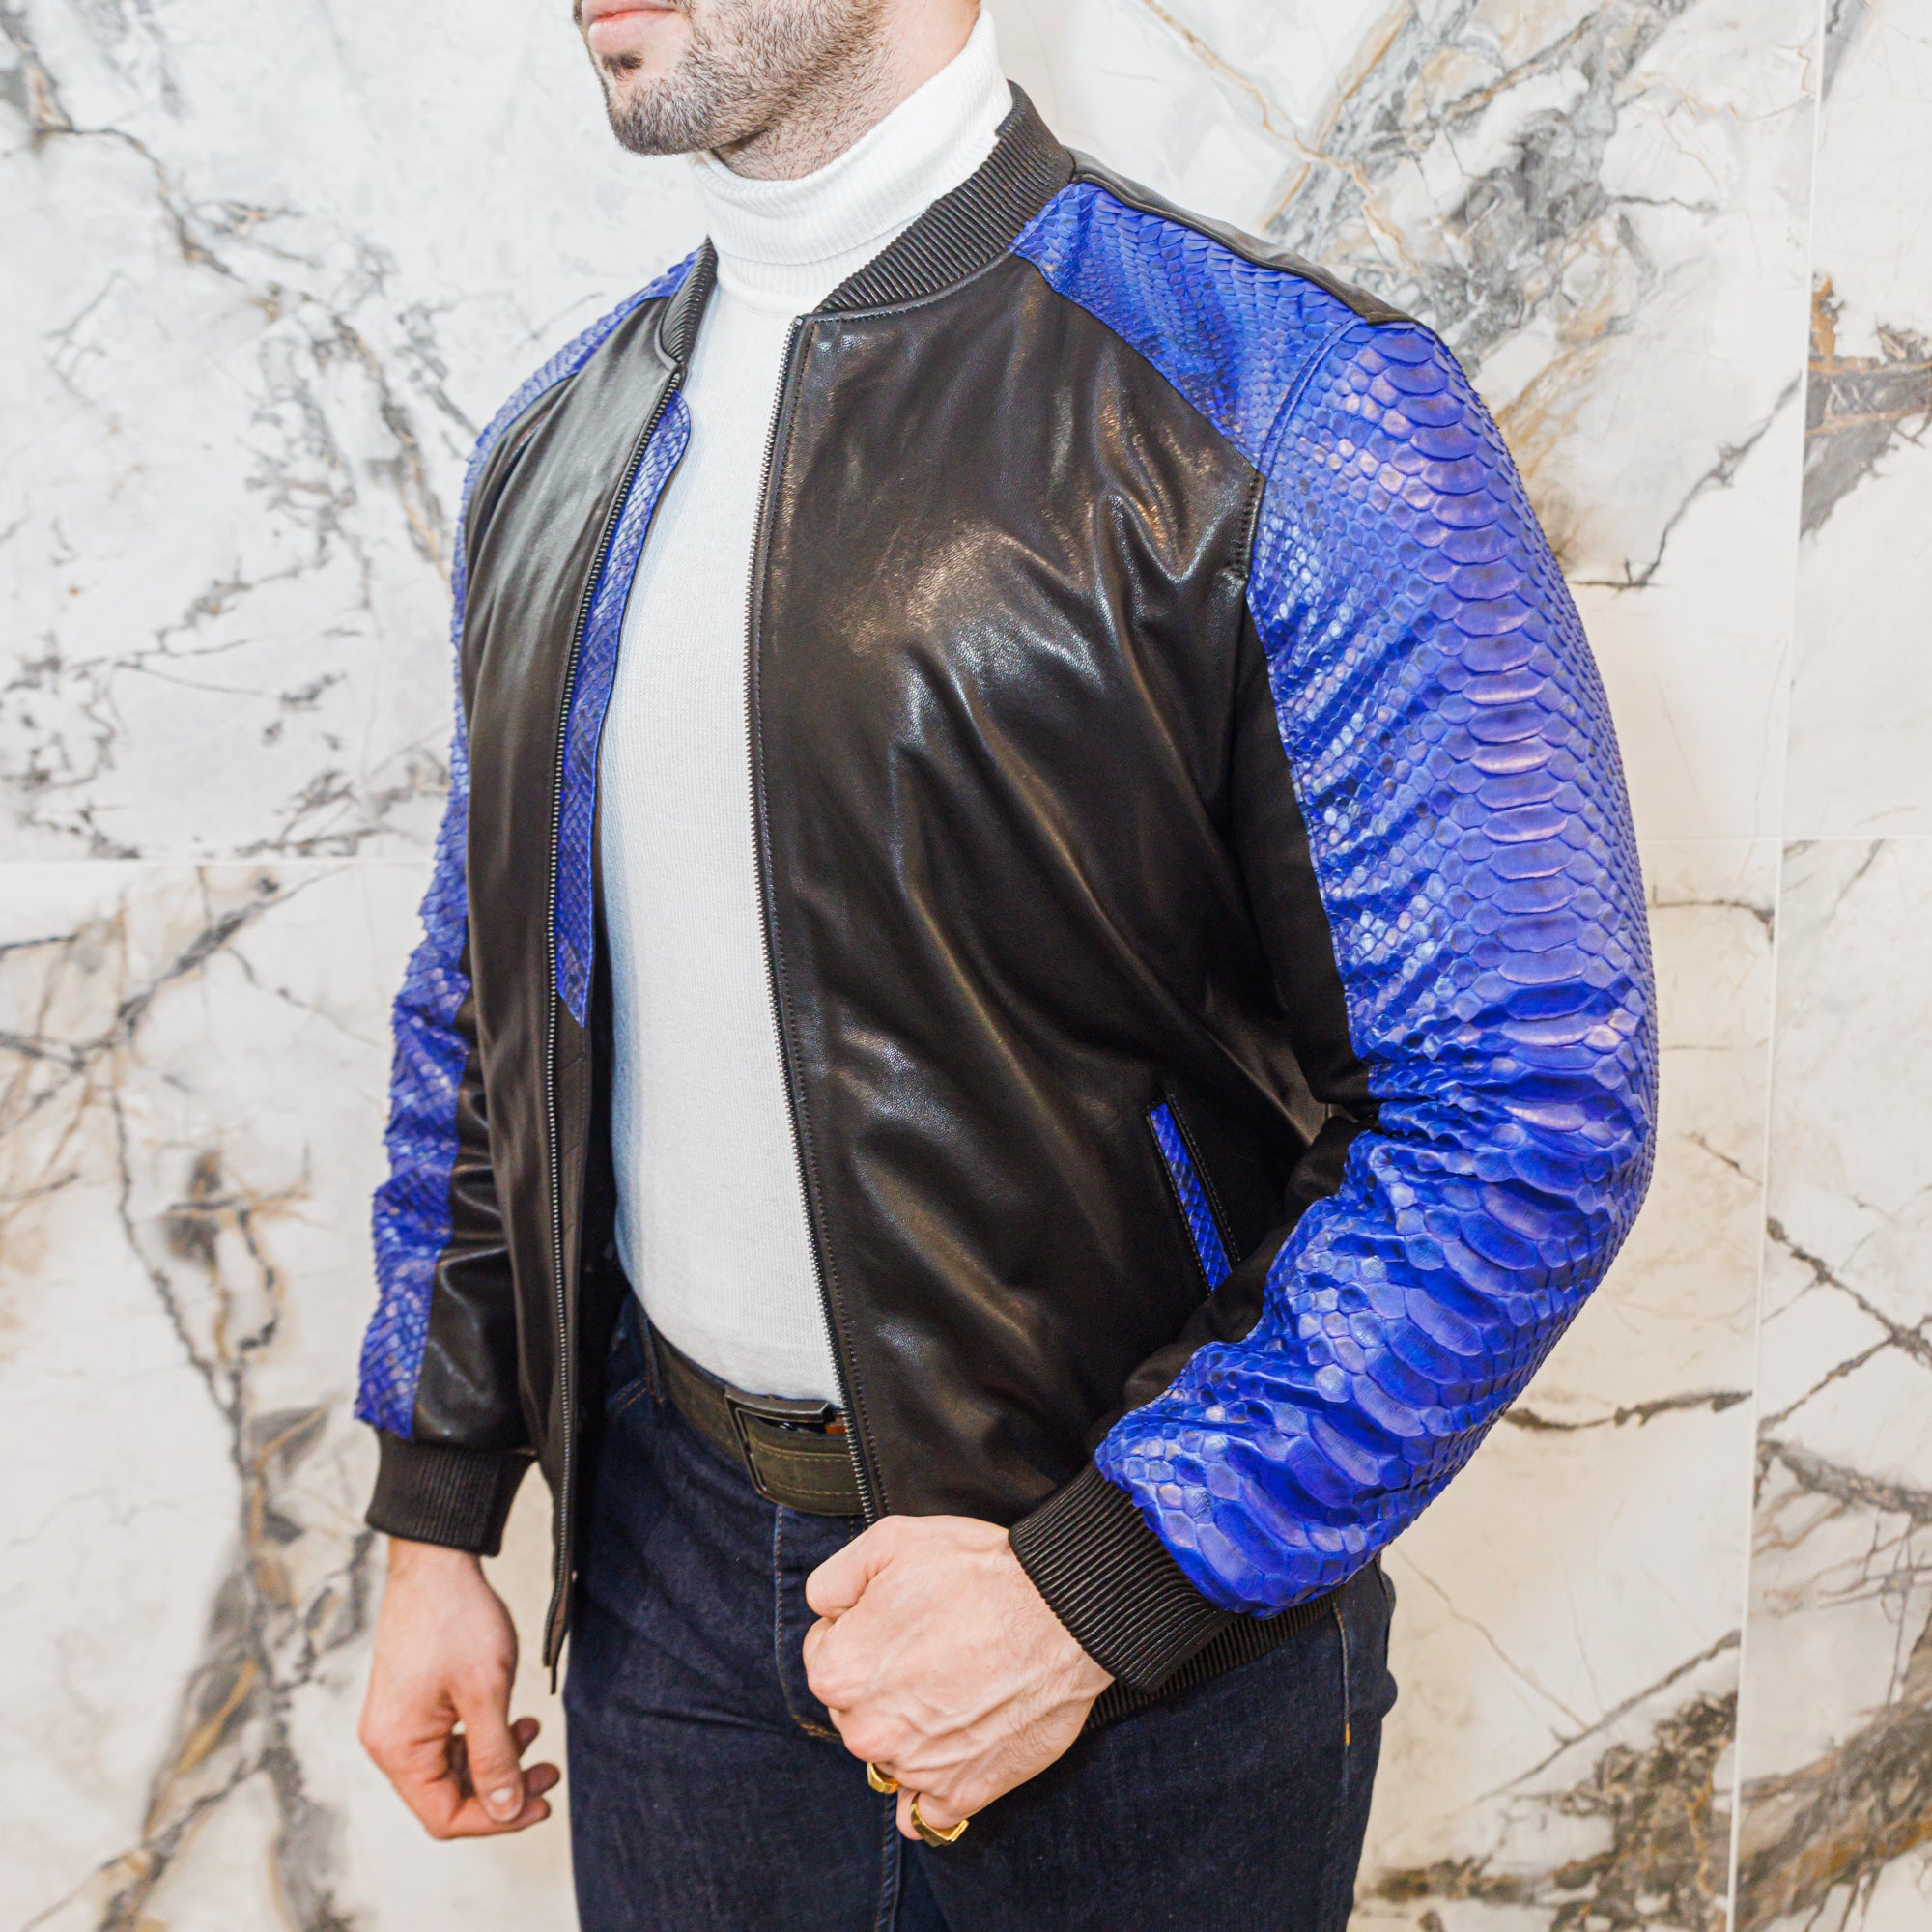 Python and Lambskin Leather Jacket - Blue/Black - Leather Jacket by Urbbana